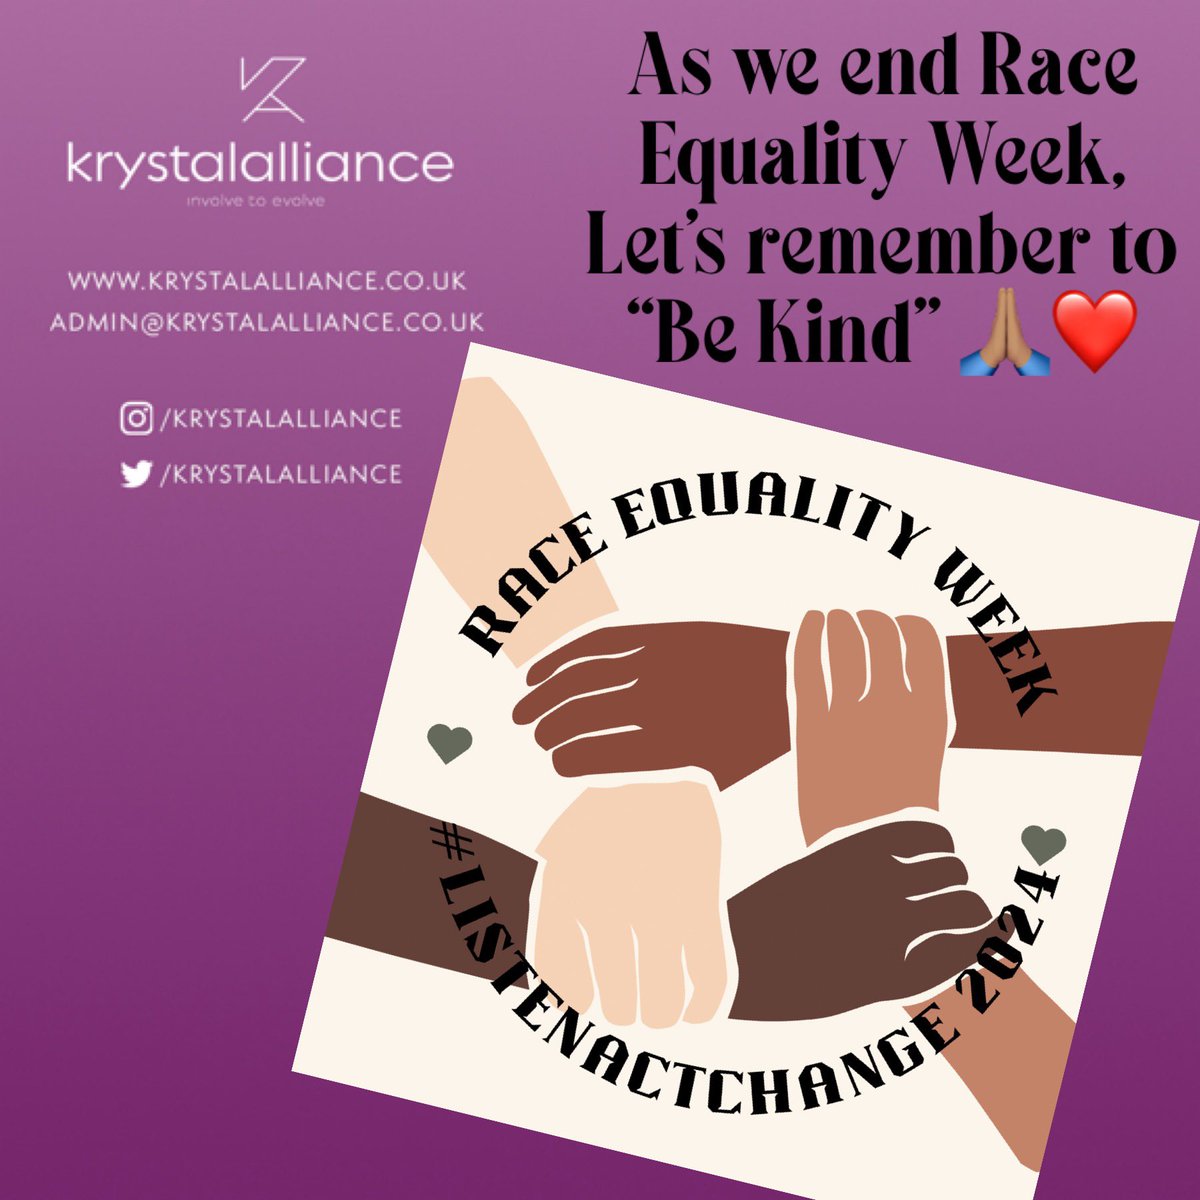 Race Equality Week ✊✊🏻✊🏼✊🏽✊🏾✊🏿 #RaceEqualityWeek #BeKindAlways #EqualityForAll #equalityandinclusion